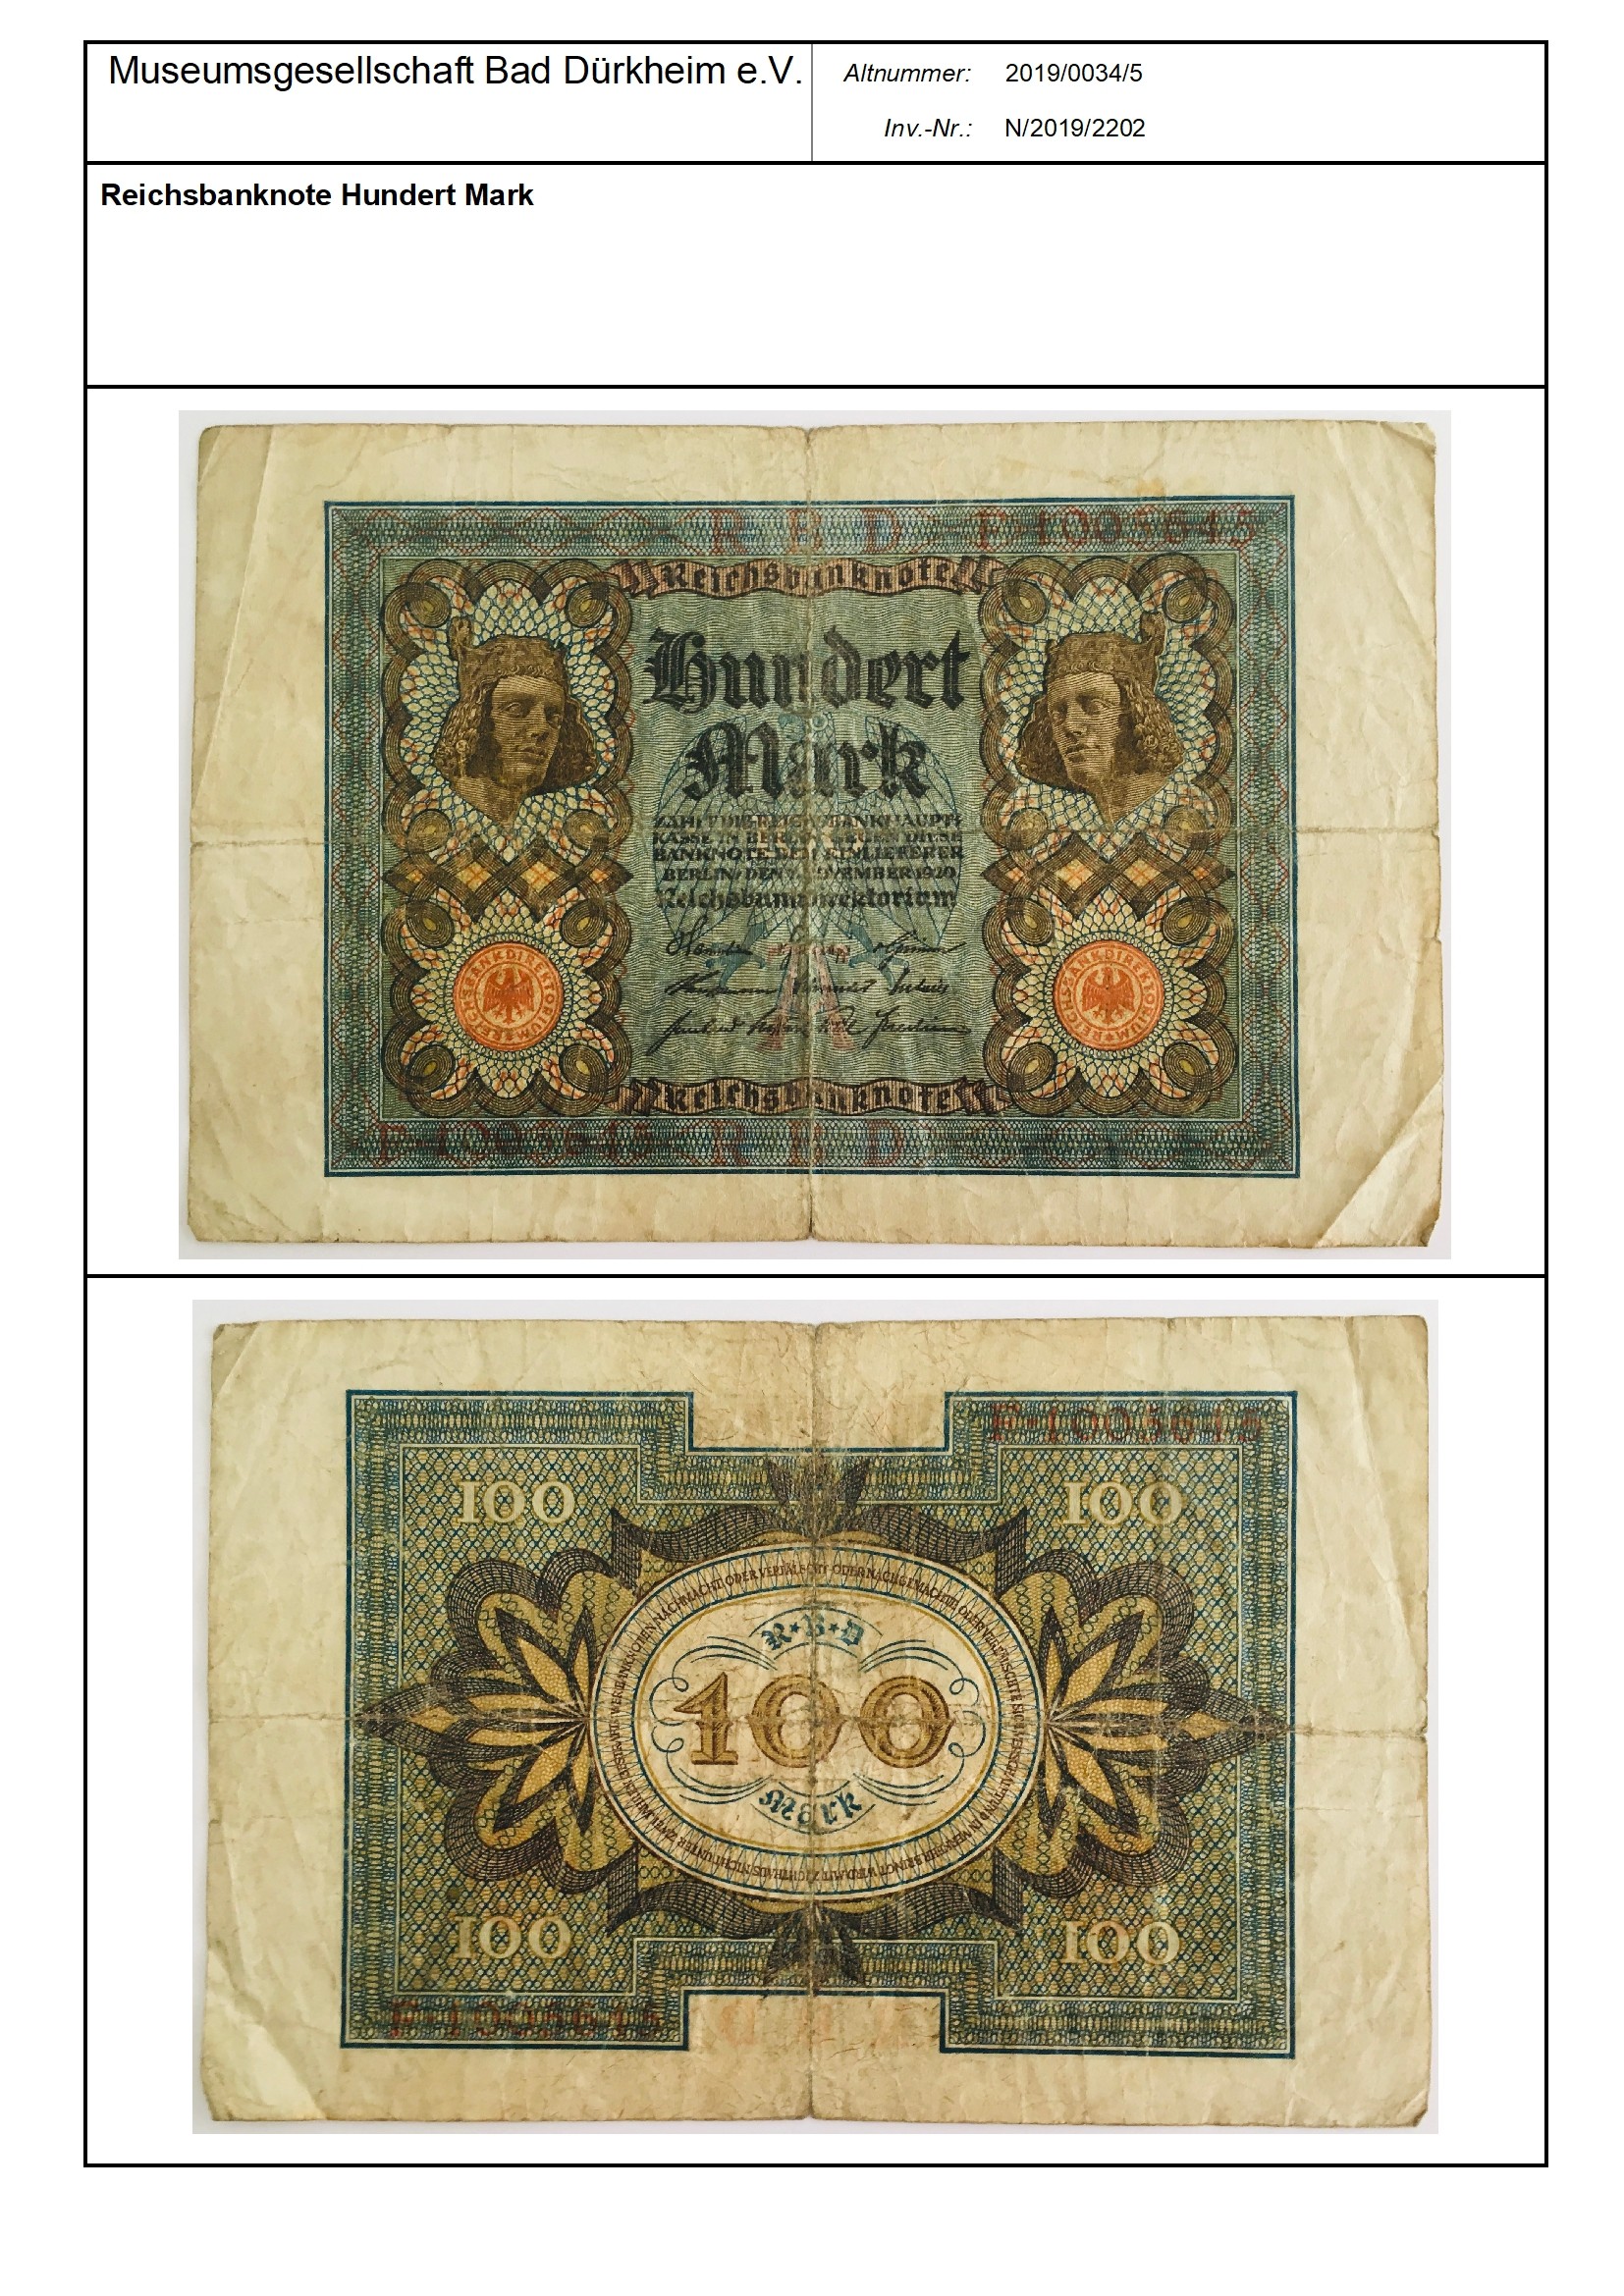 Reichsbanknote Hundert Mark
Serien-Nummer: F*1005645 (Museumsgesellschaft Bad Dürkheim e.V. CC BY-NC-SA)